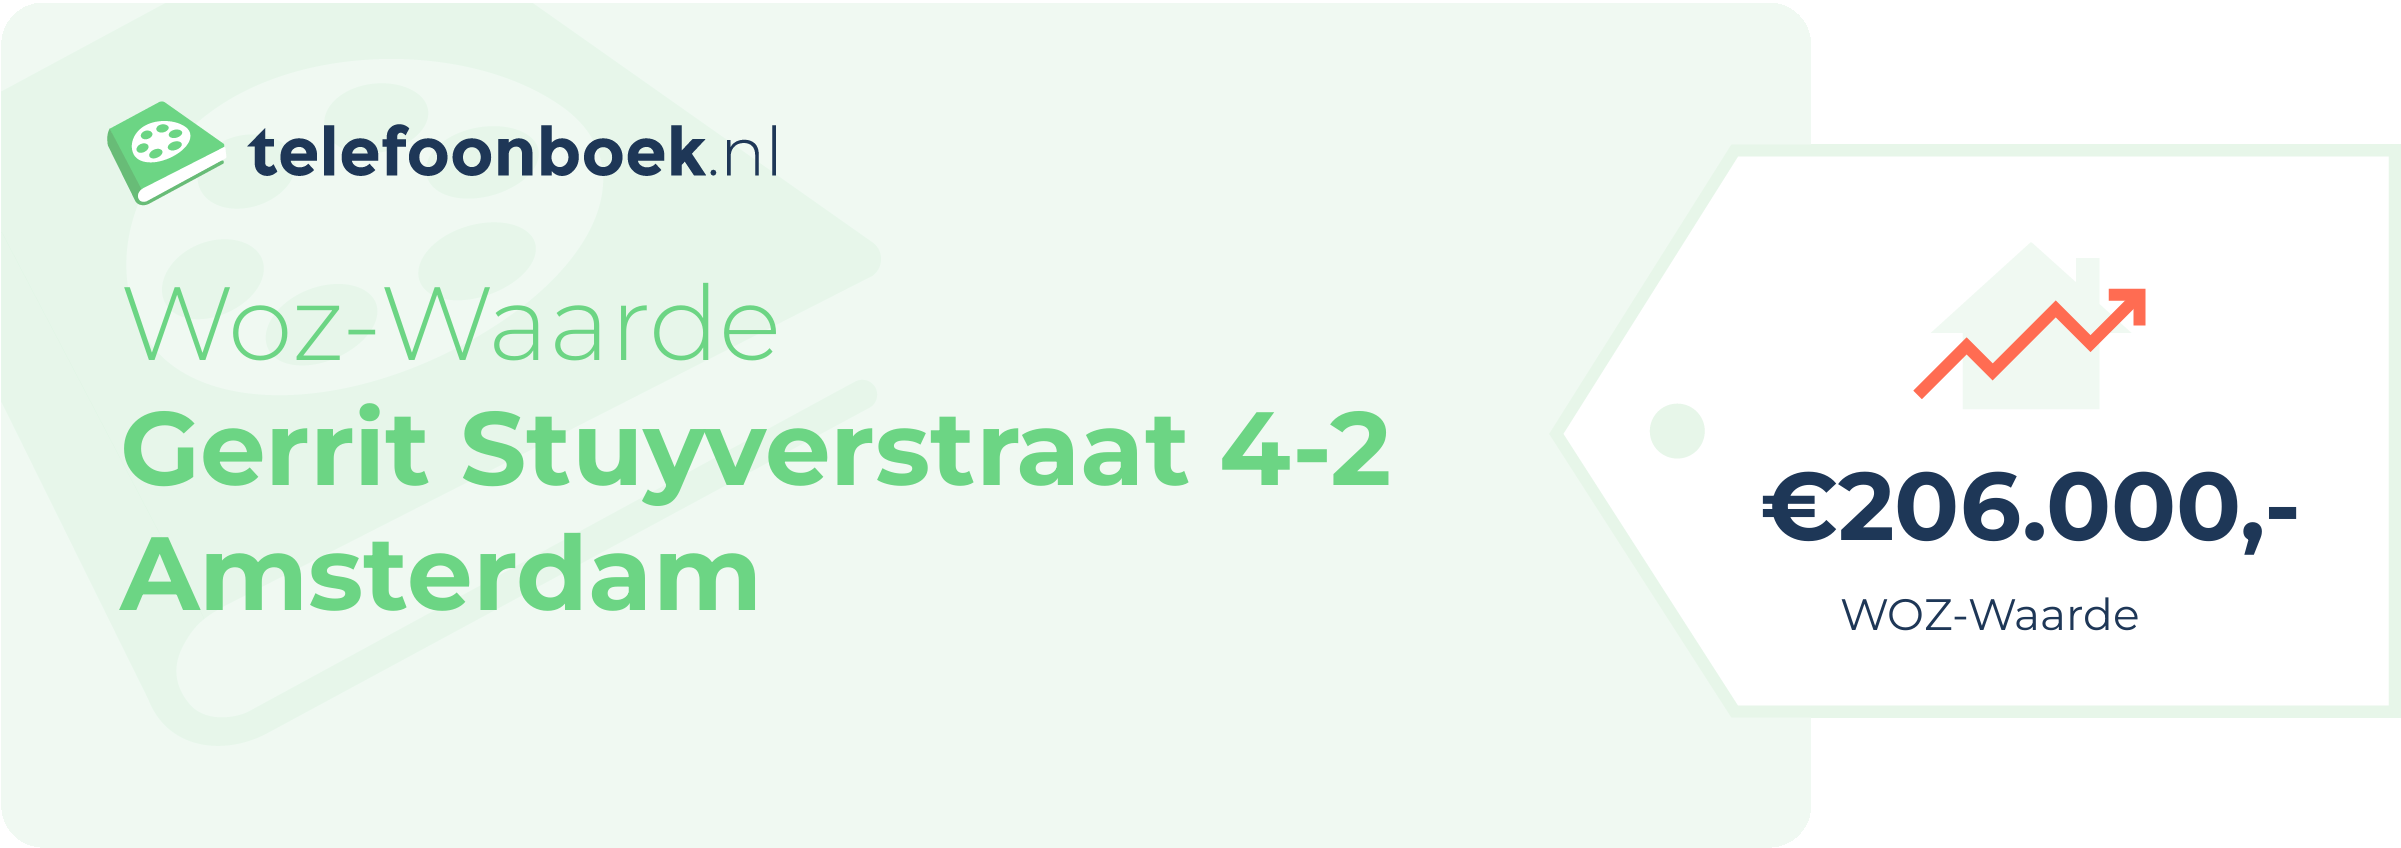 WOZ-waarde Gerrit Stuyverstraat 4-2 Amsterdam